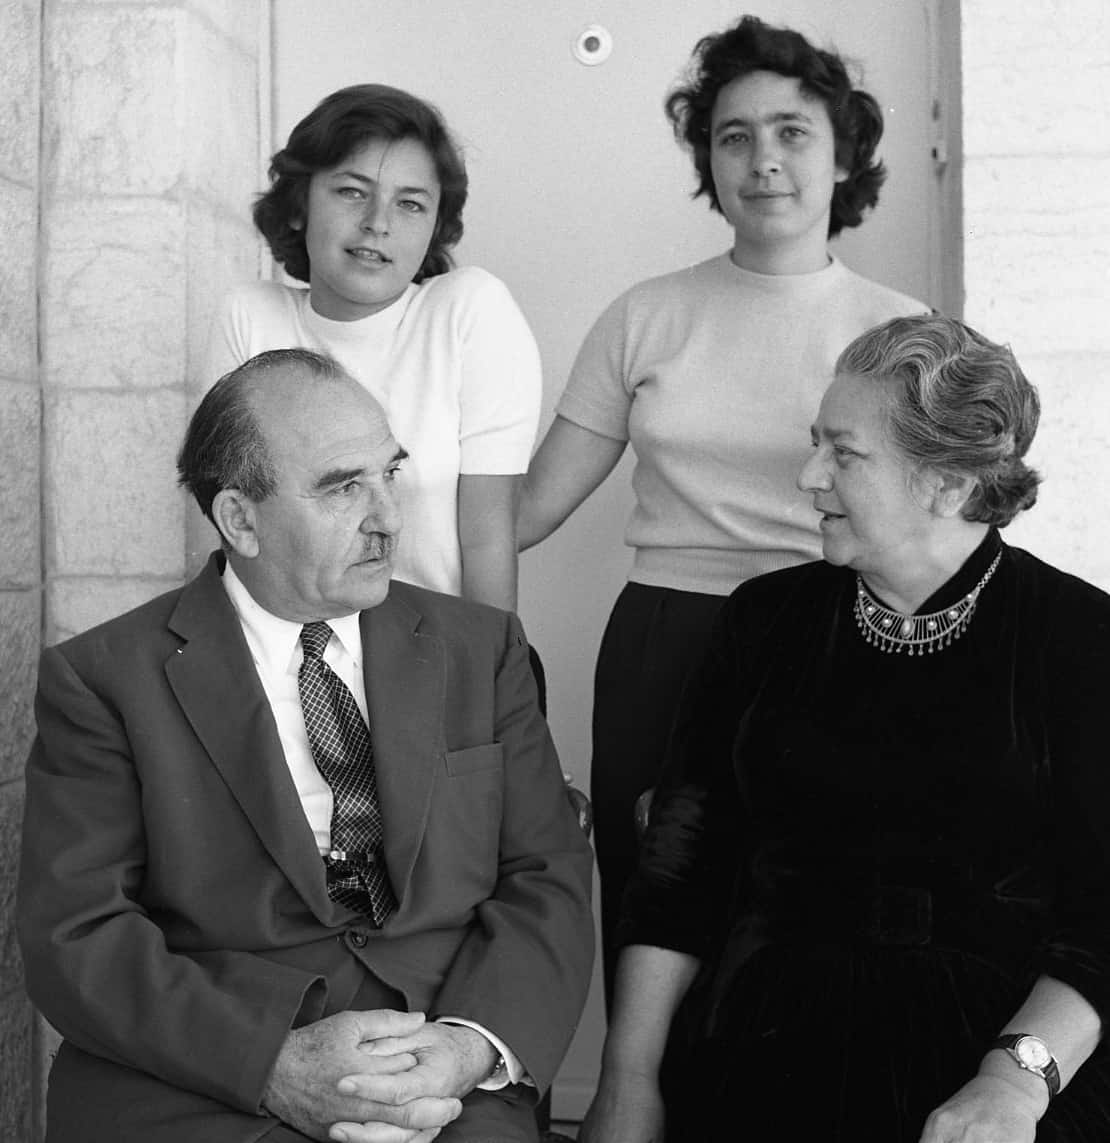 ראש הממשלה לוי אשכול עם משפחתו, לפני 1967 (צילום: אפרים אילני)